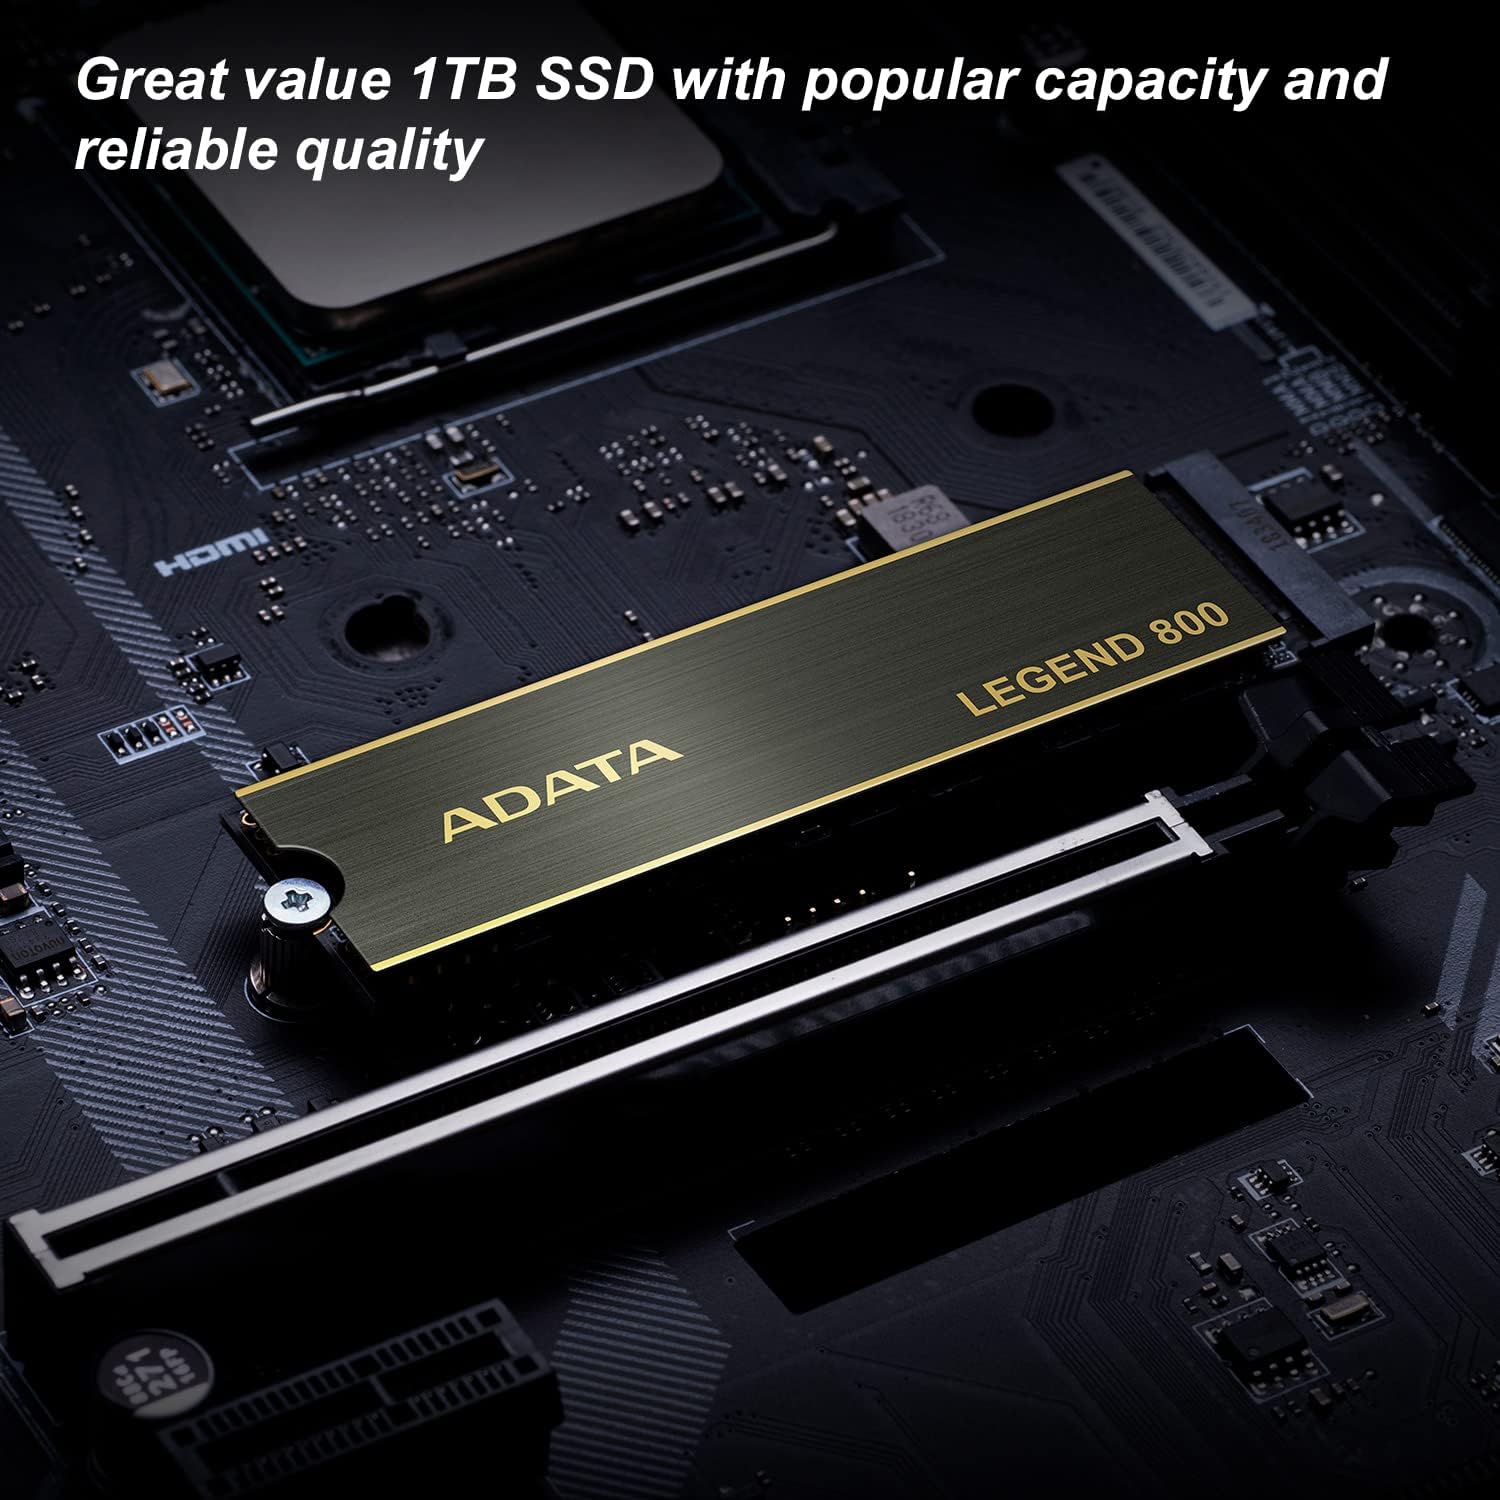 ADATA LEGEND 800 PCIe X4 M.2 500GB NVMe